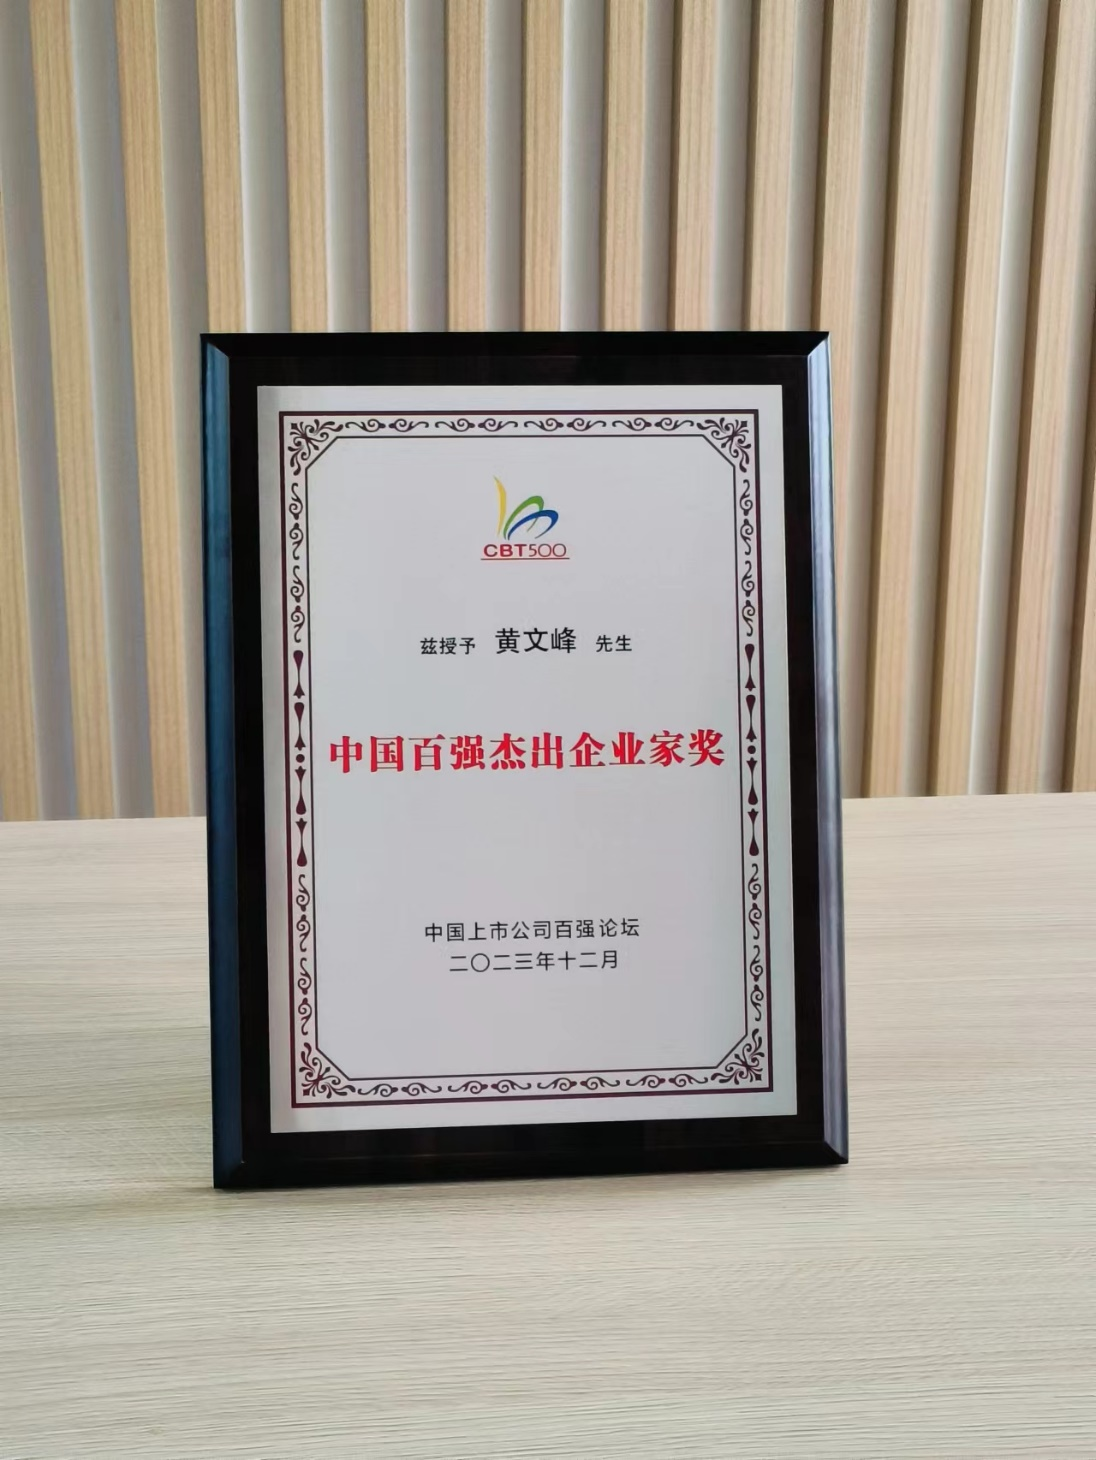 英超线上买球(中国)有限公司董事长黄文峰先生荣获“中国百强杰出企业家奖”